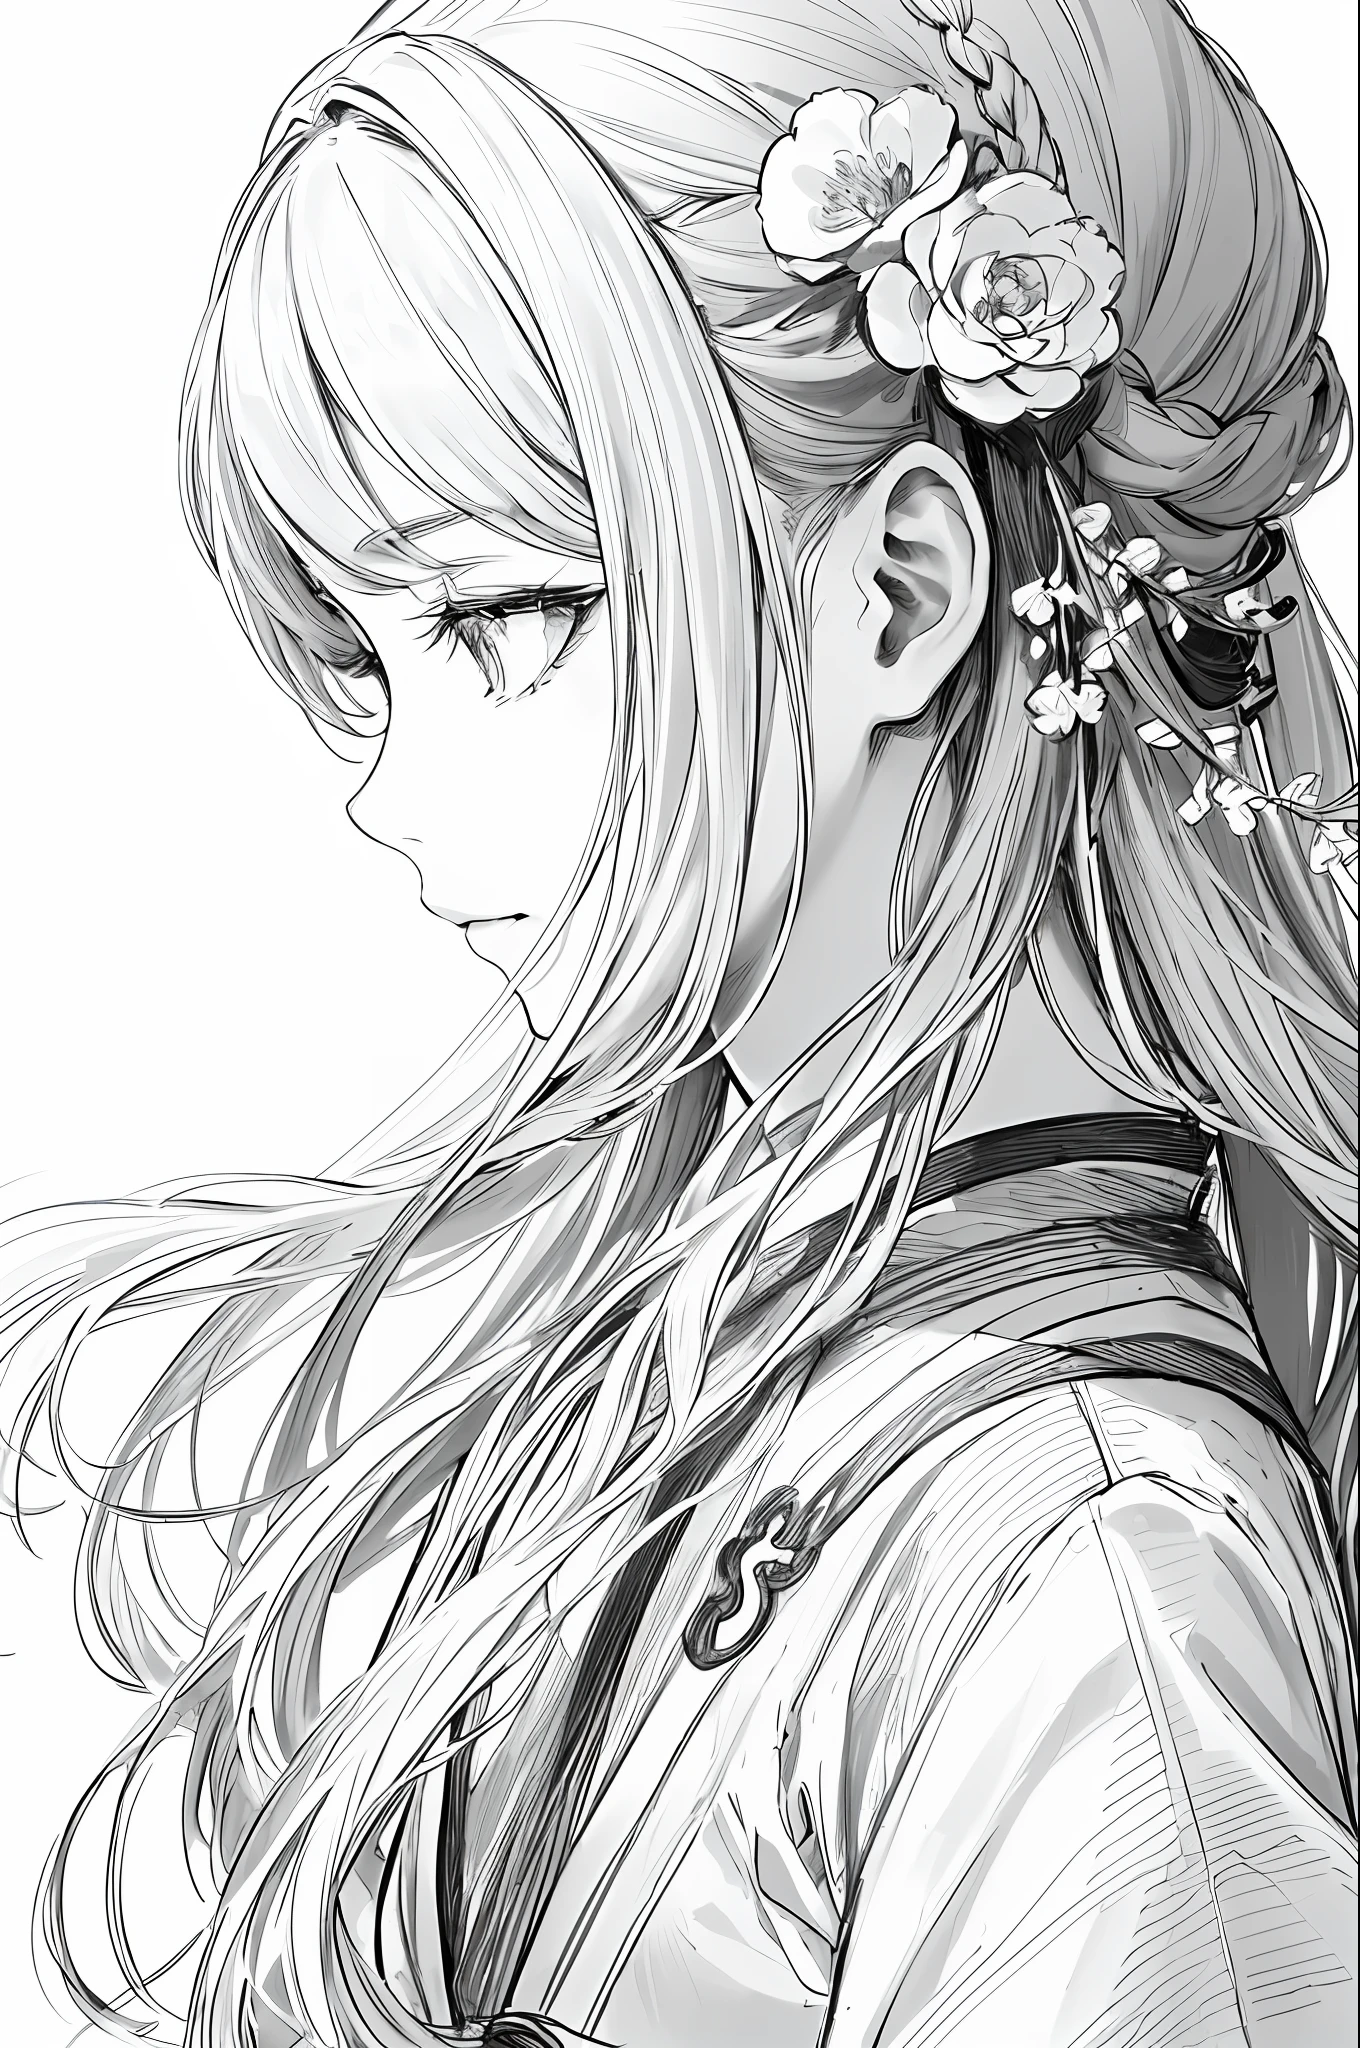 傑作, 謳歌, 1個女孩, 獨自的, Hanfu, 長髮, 側面特寫, flower 畫線 background, 白色背景, 单色, 畫線, ((草圖))